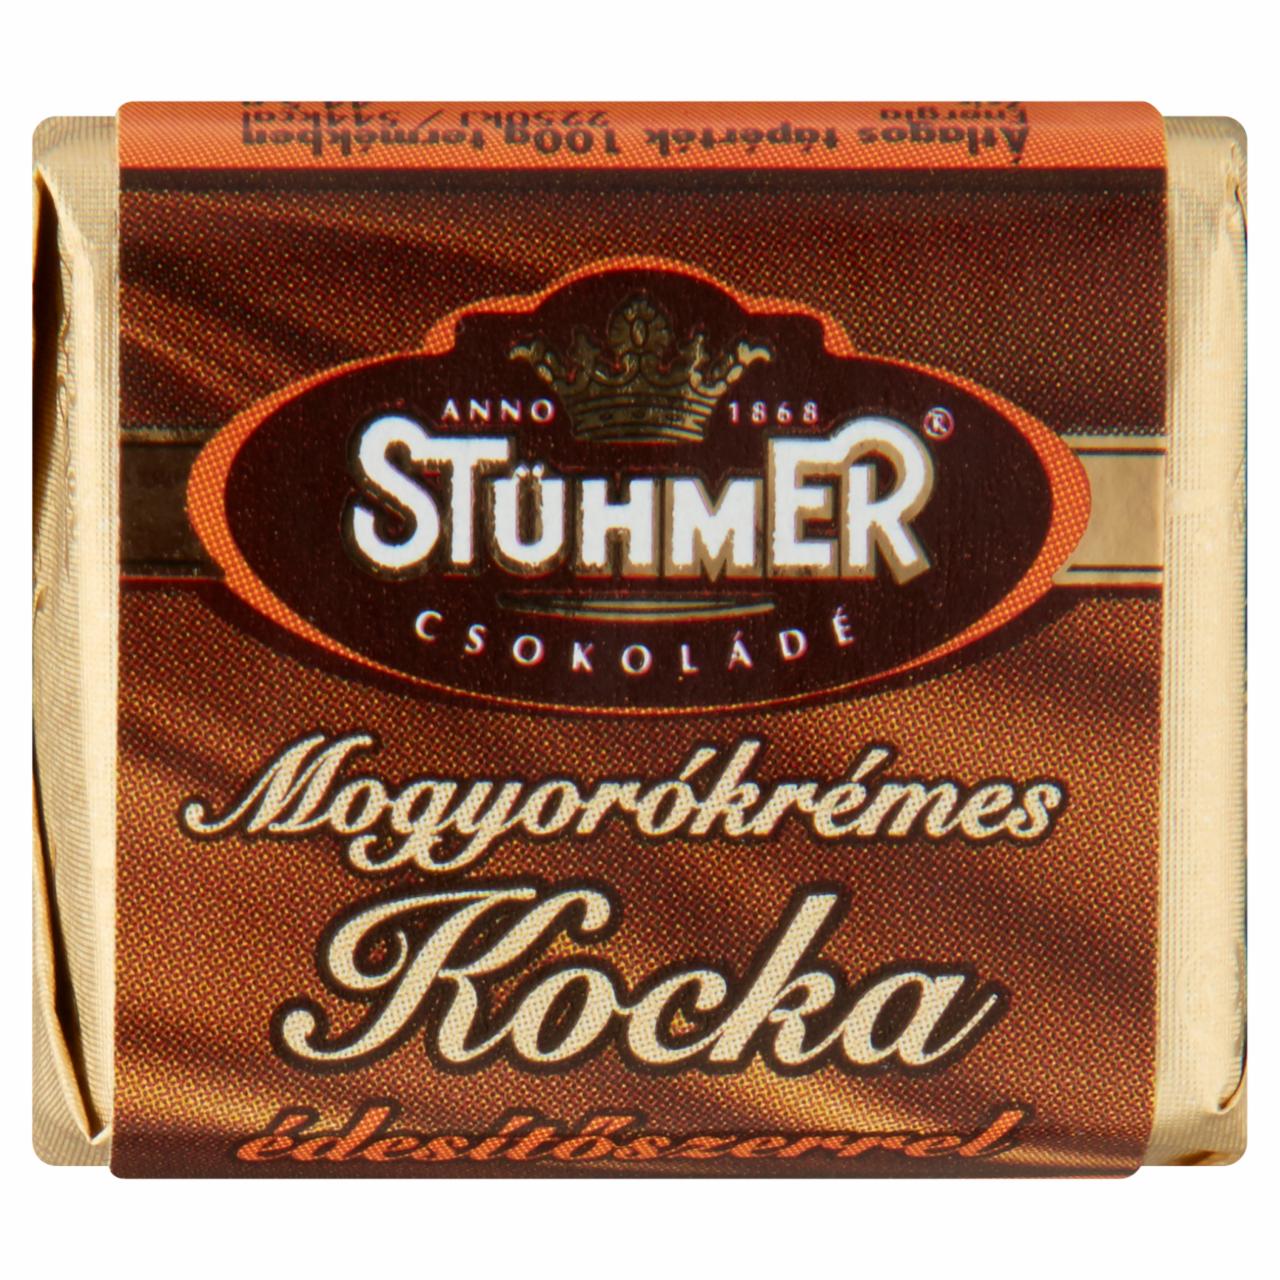 Képek - Stühmer mogyorókrémes kocka édesítőszerrel 13 g